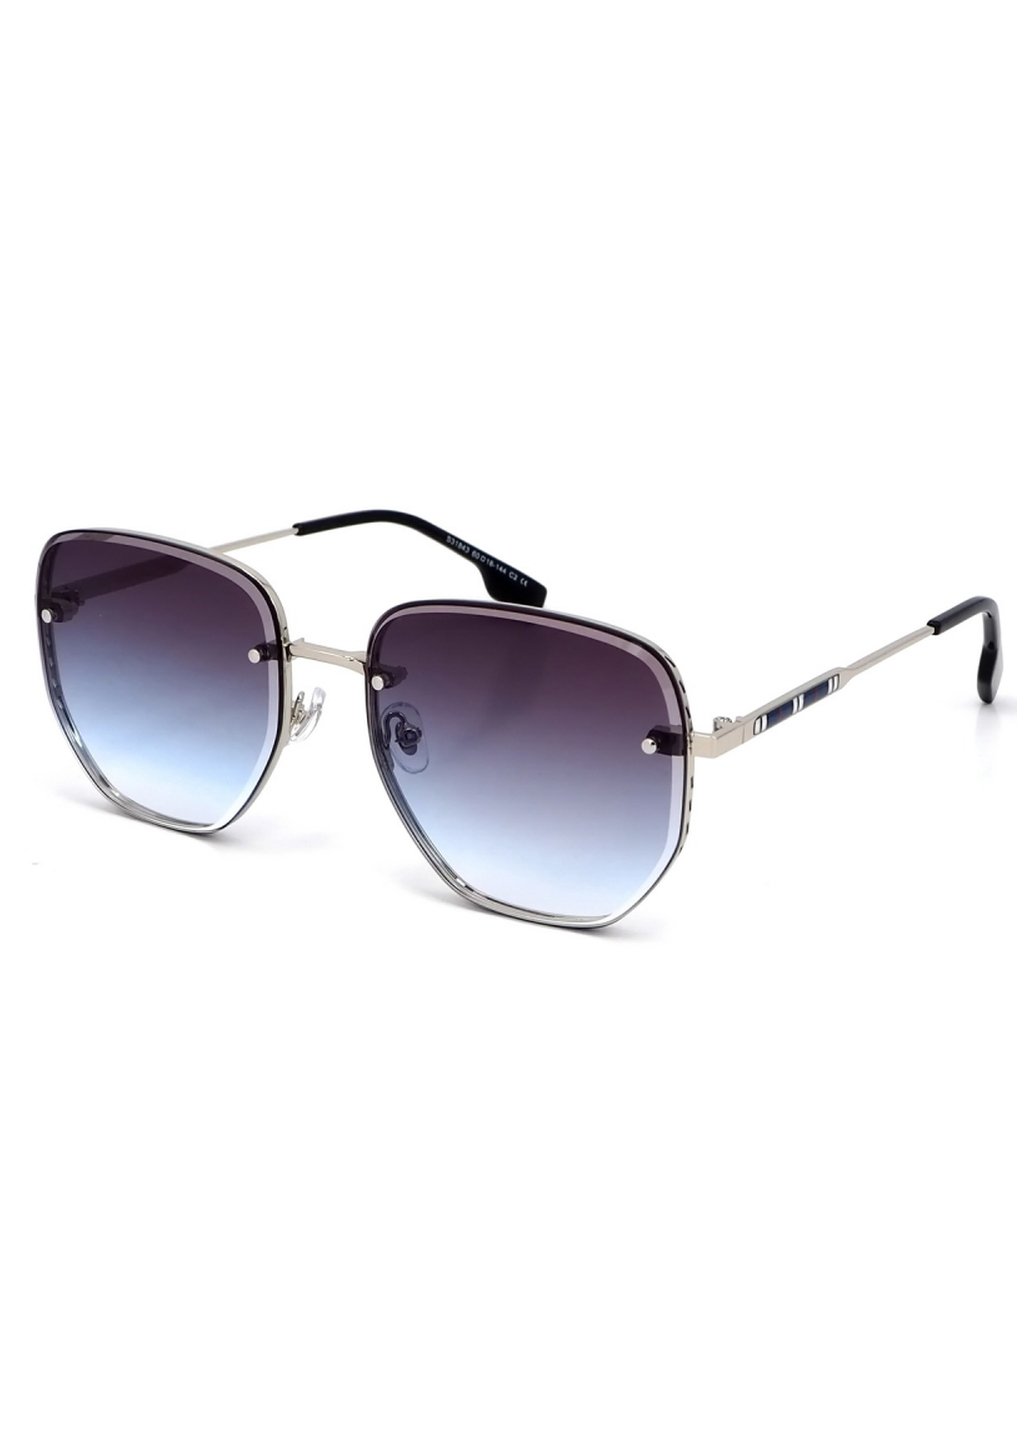 Купить Женские солнцезащитные очки Merlini с поляризацией S31843 117127 - Серебристый в интернет-магазине